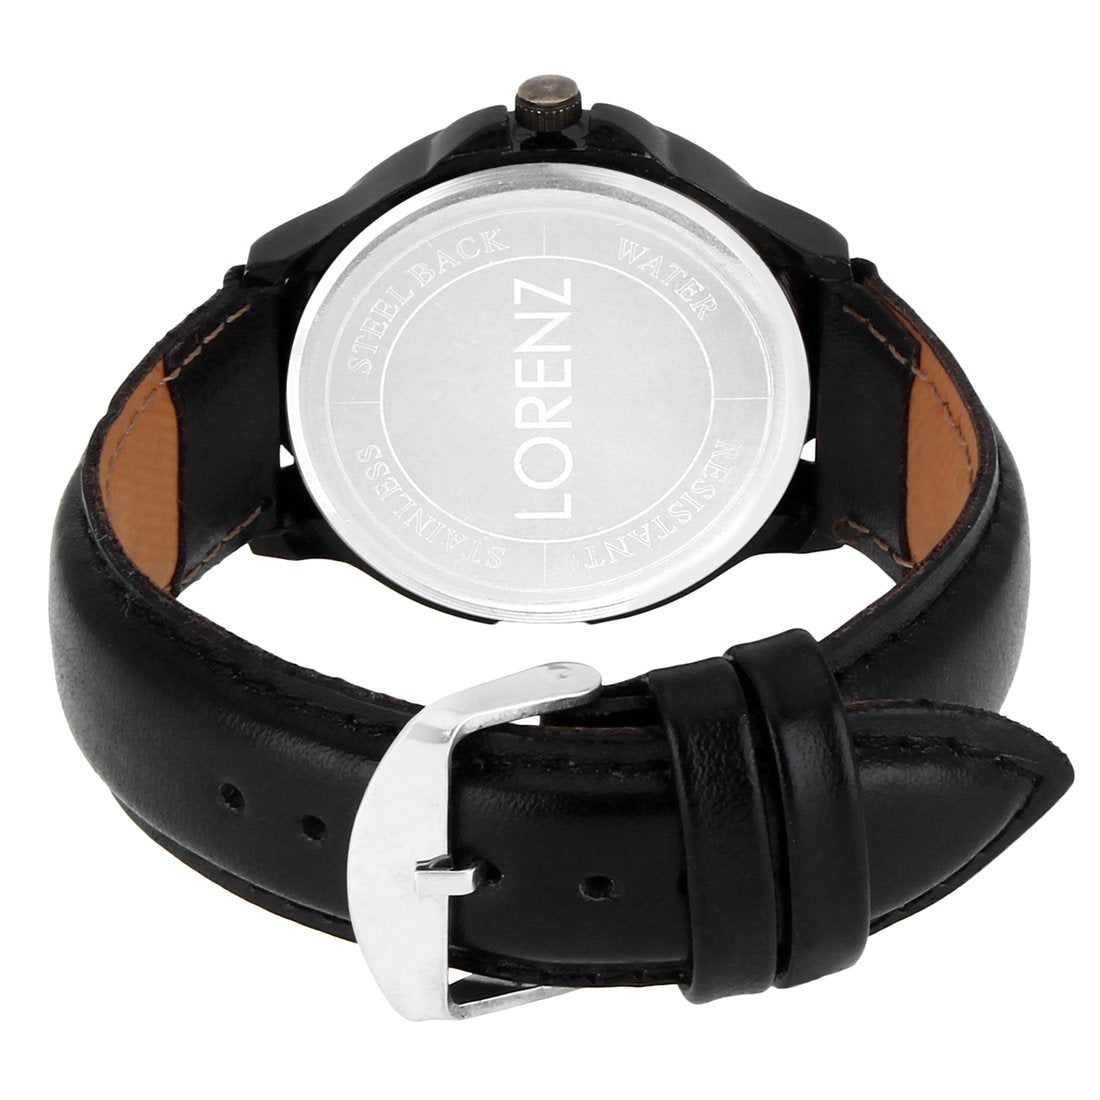 Lorenz Analogue Black Dial Watch for Men- MK-1064A - Lorenz Fashion